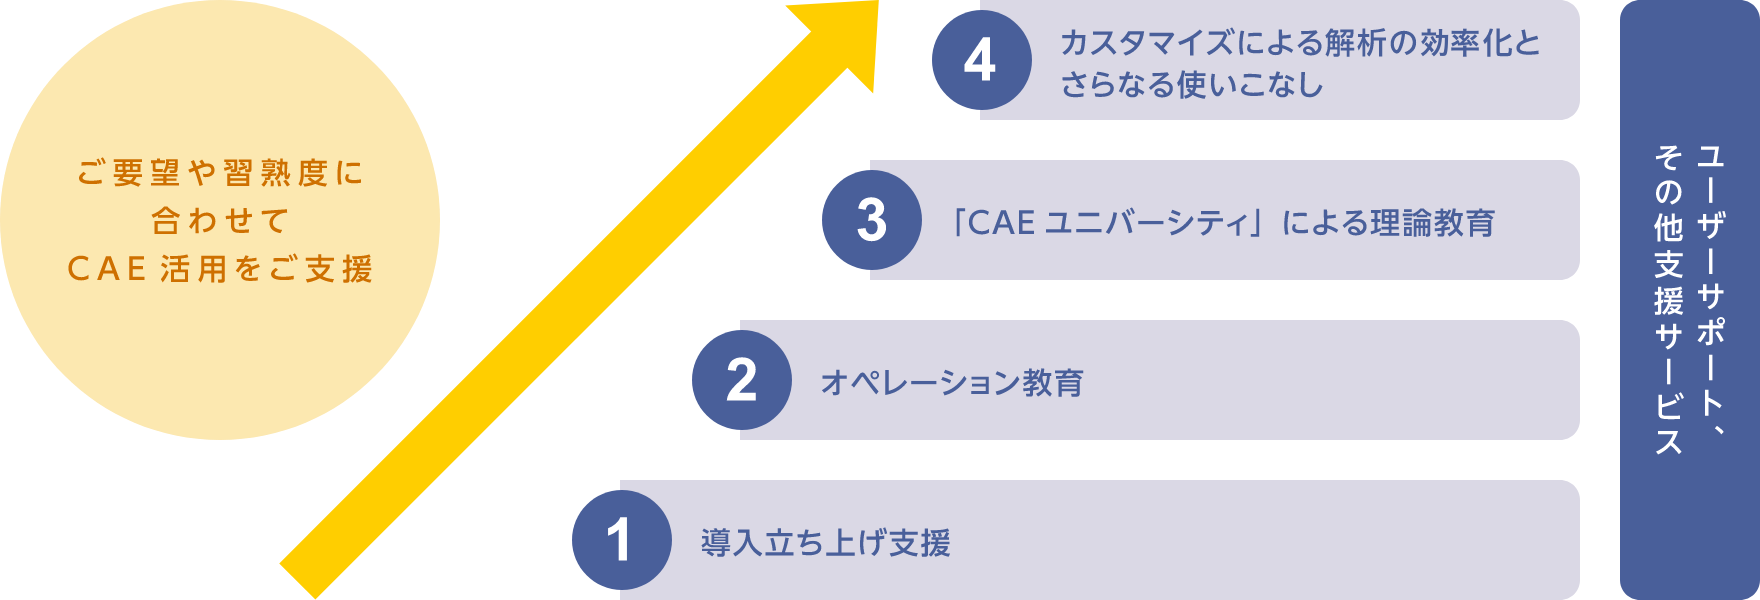 CAE を使いこなすために用意された4つのステップとサポート体制